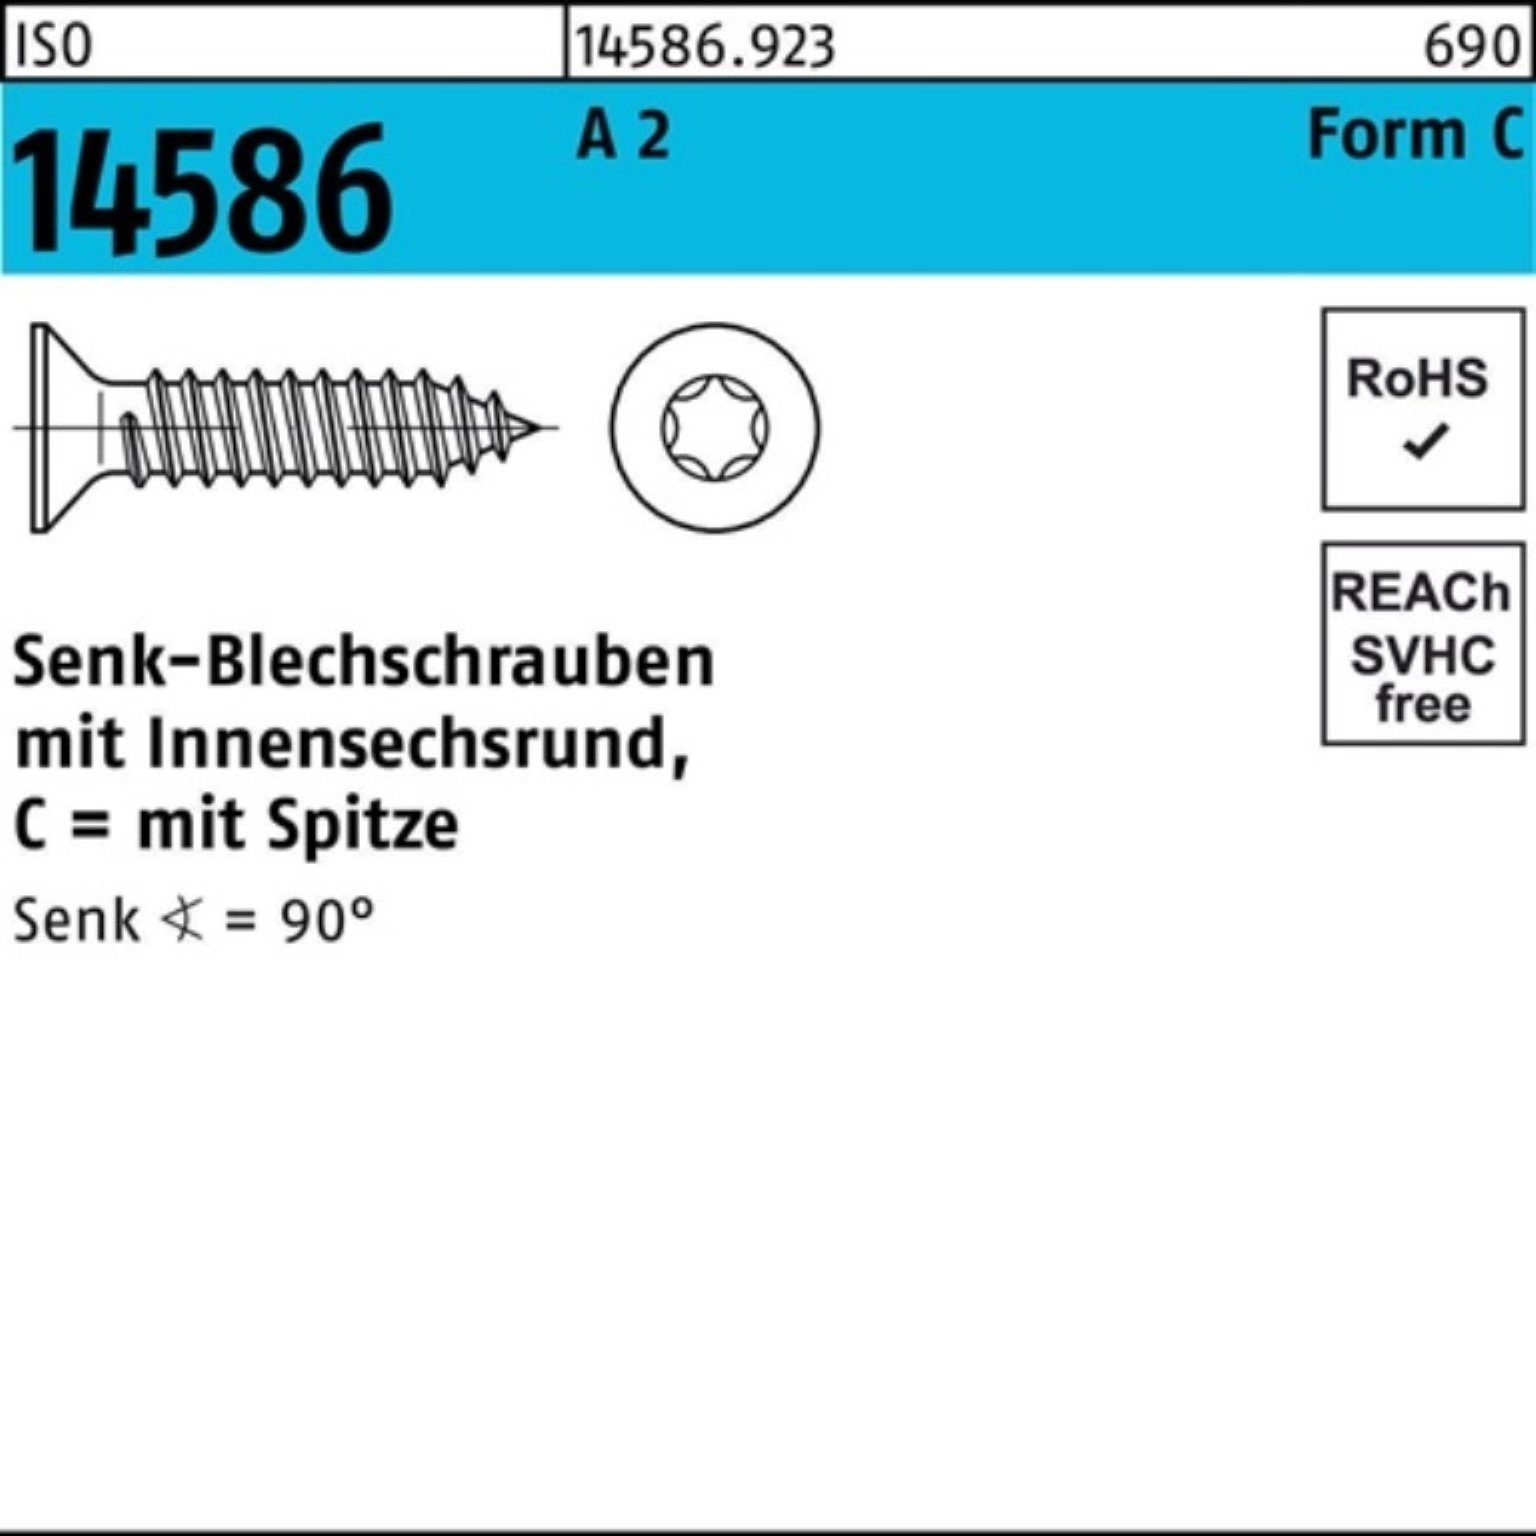 Reyher Schraube 500er Pack Senkblechschraube 50 3,9x 14586 2 A -C T15 ISO 5 ISR/Spitze